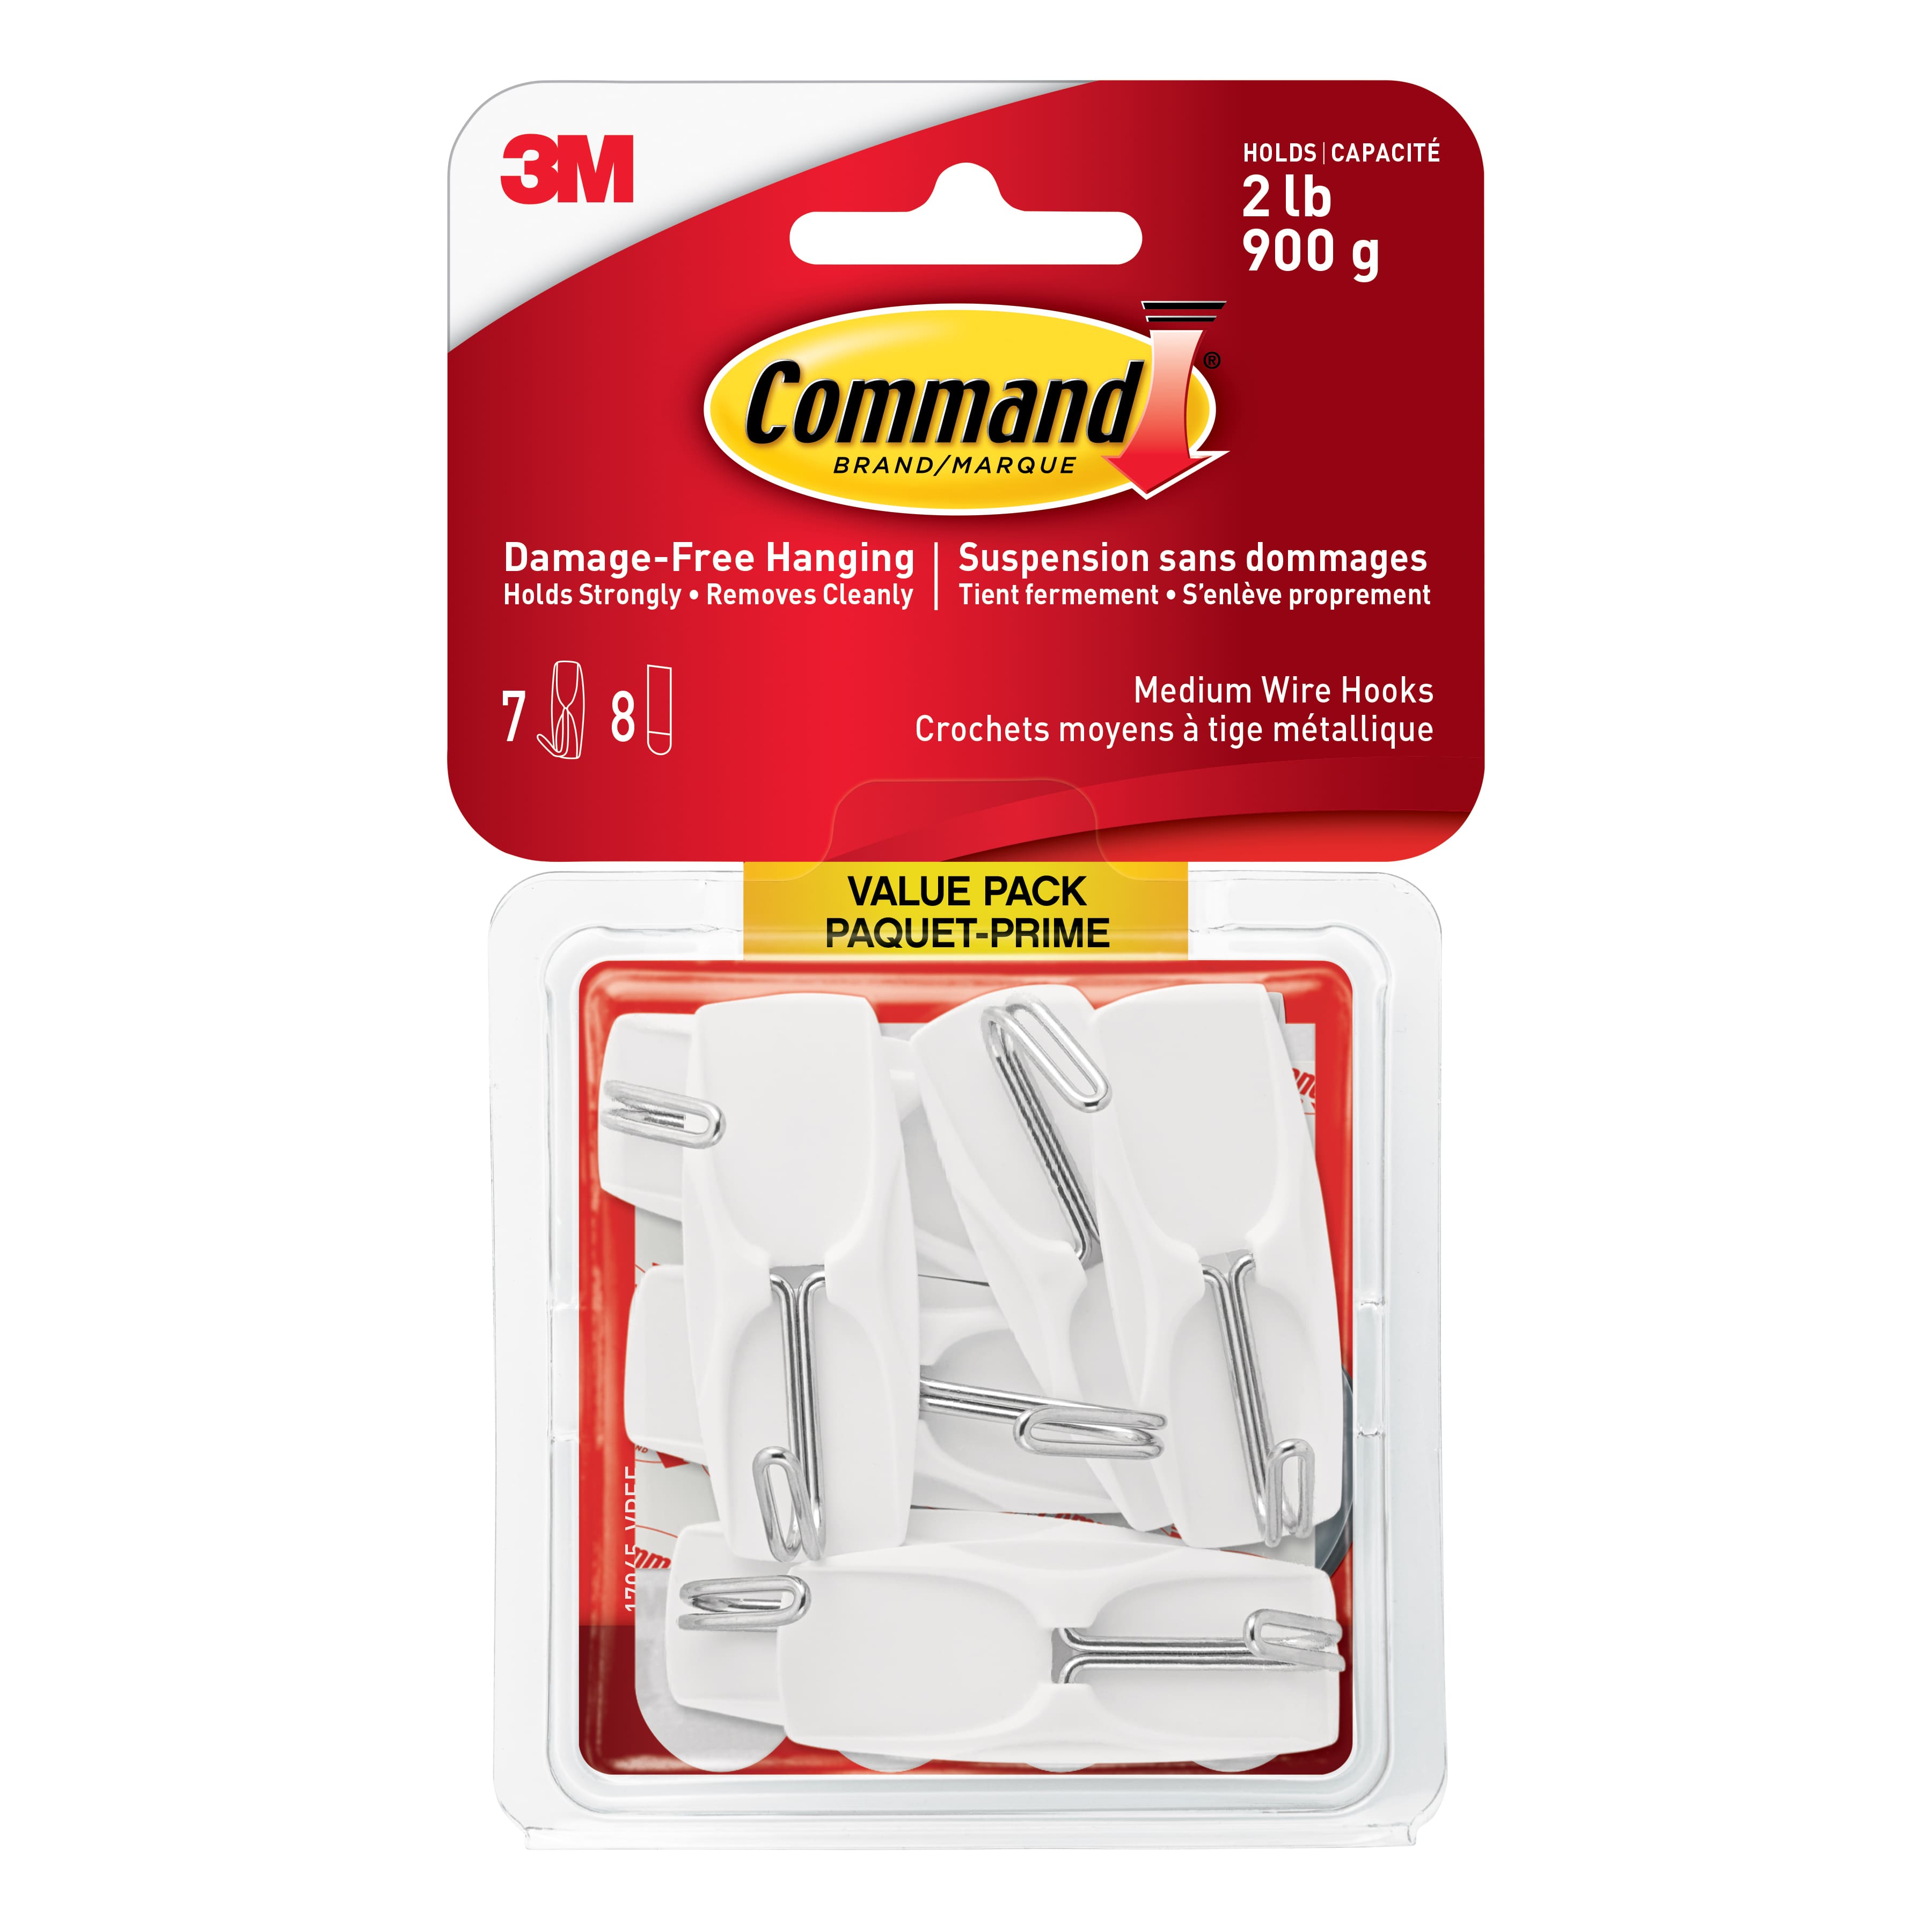 Buy in Bulk - 12 Packs: 7 ct. (84 total) Command™ White Medium